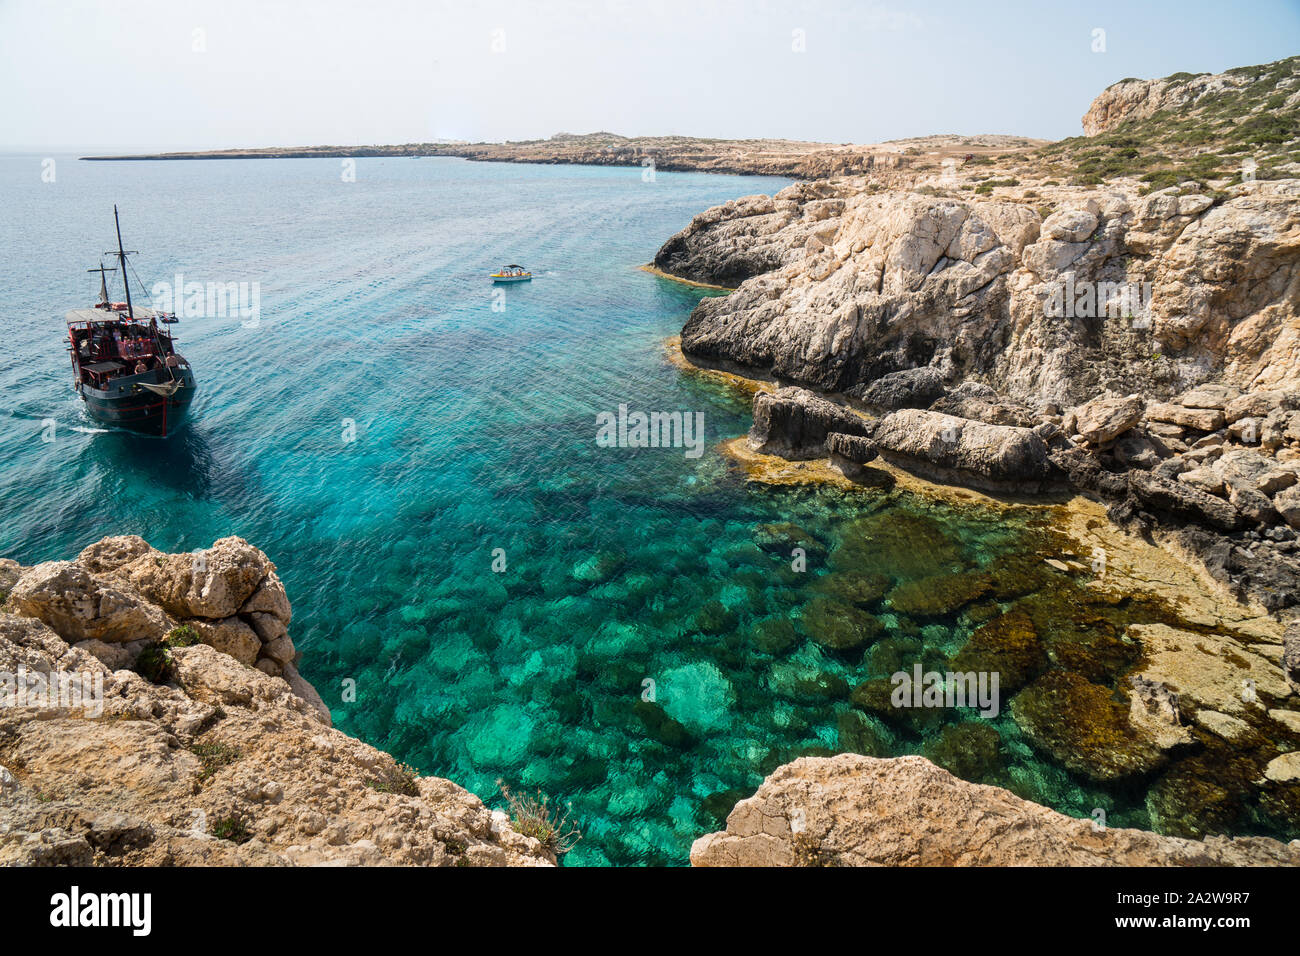 Butifull Bay in Zypern mit Schiff und türkisblauem Wasser Stockfoto